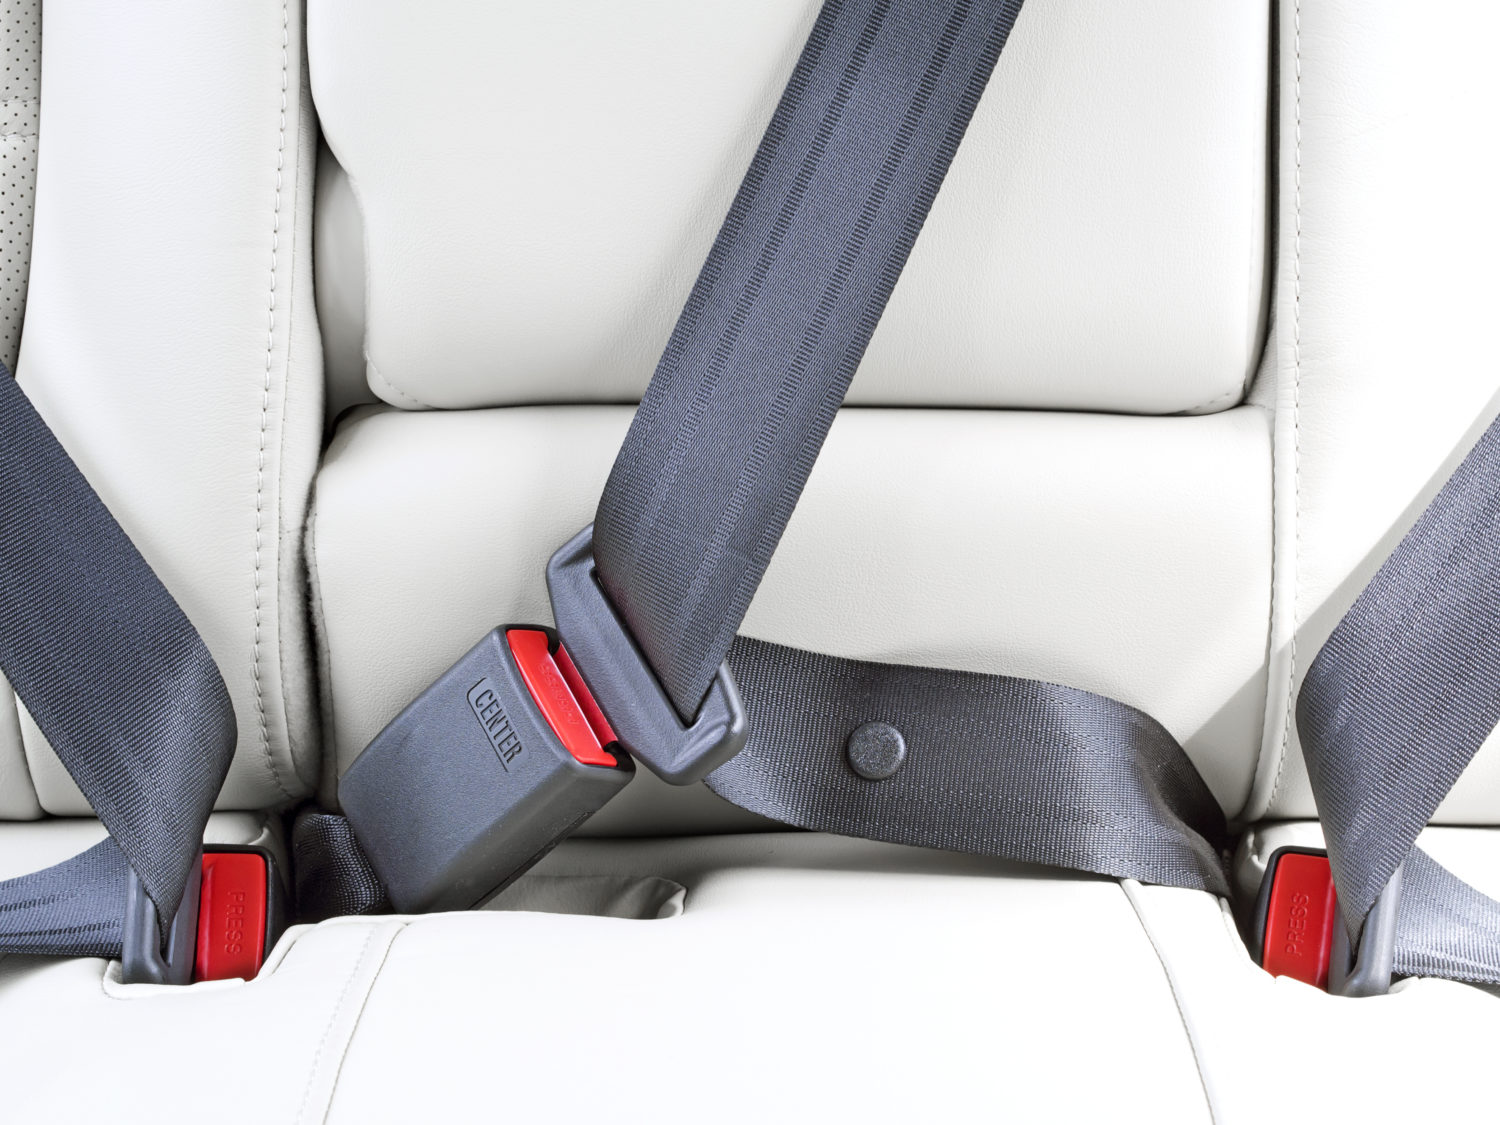 Применение ремней безопасности. Seat Belt, Safety 95.241-210. Wear a Seat Belt. VAG 8 гр., VW, Seat Belt. Ремни безопасности пассажиров задних рядов т4.